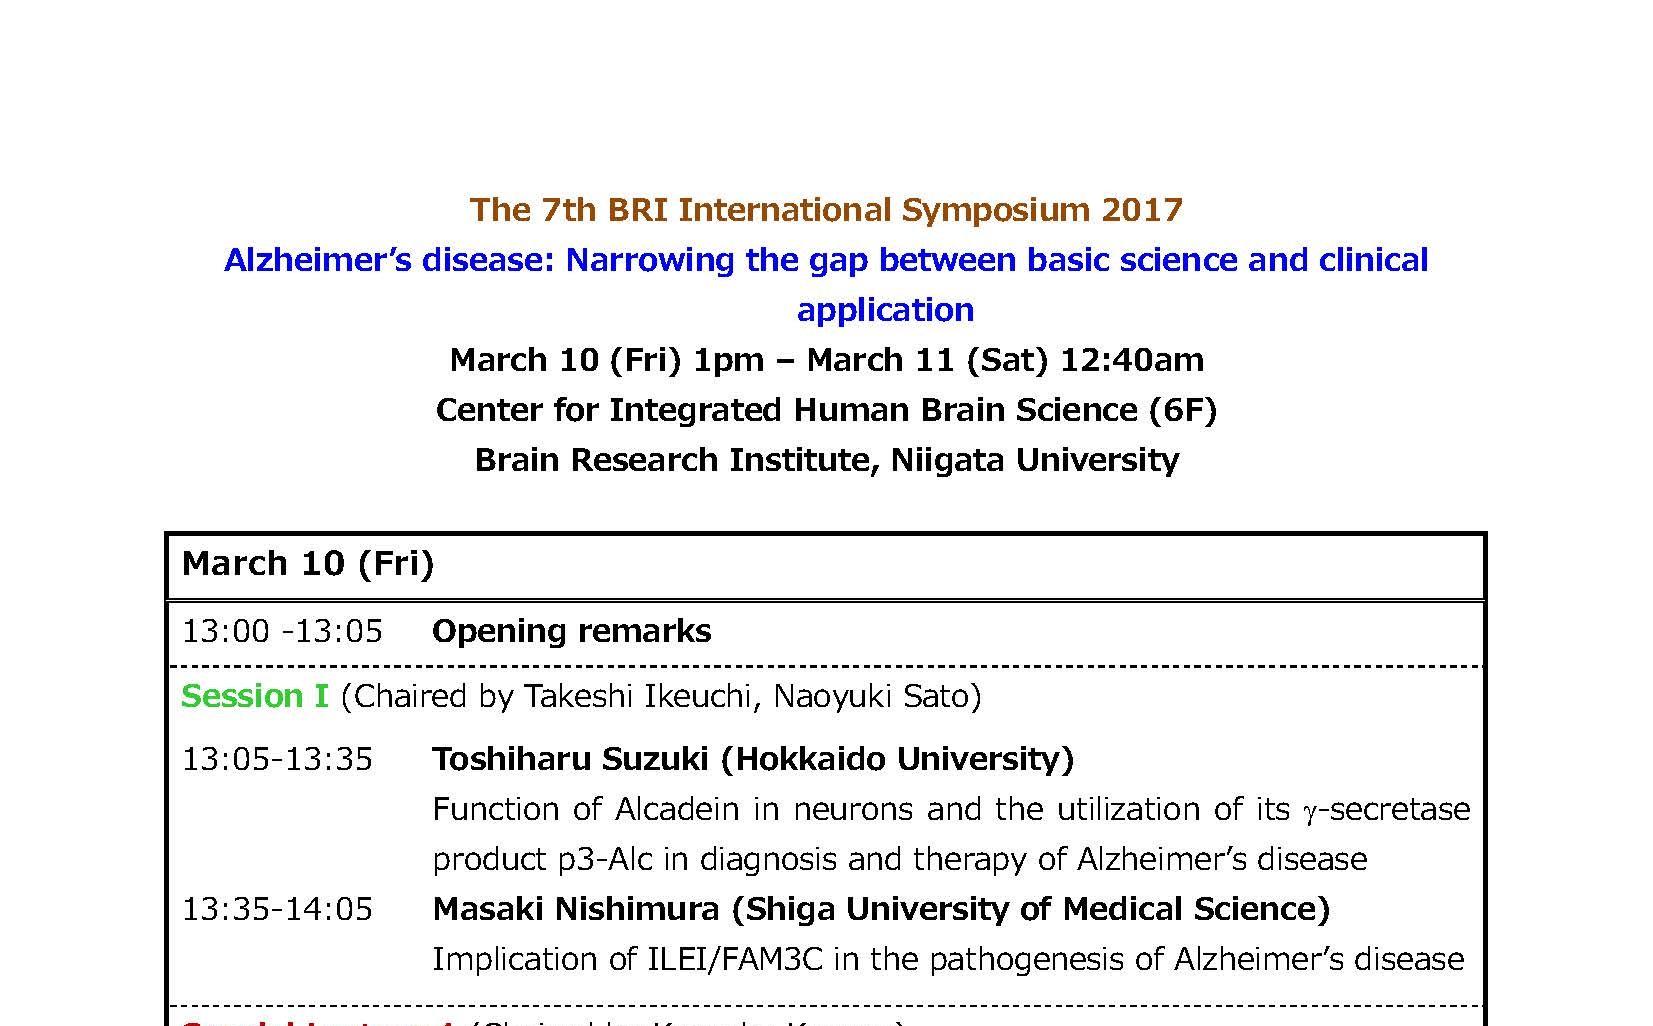 The 7th BRI International Symposium. March 10th - 11th, 2017